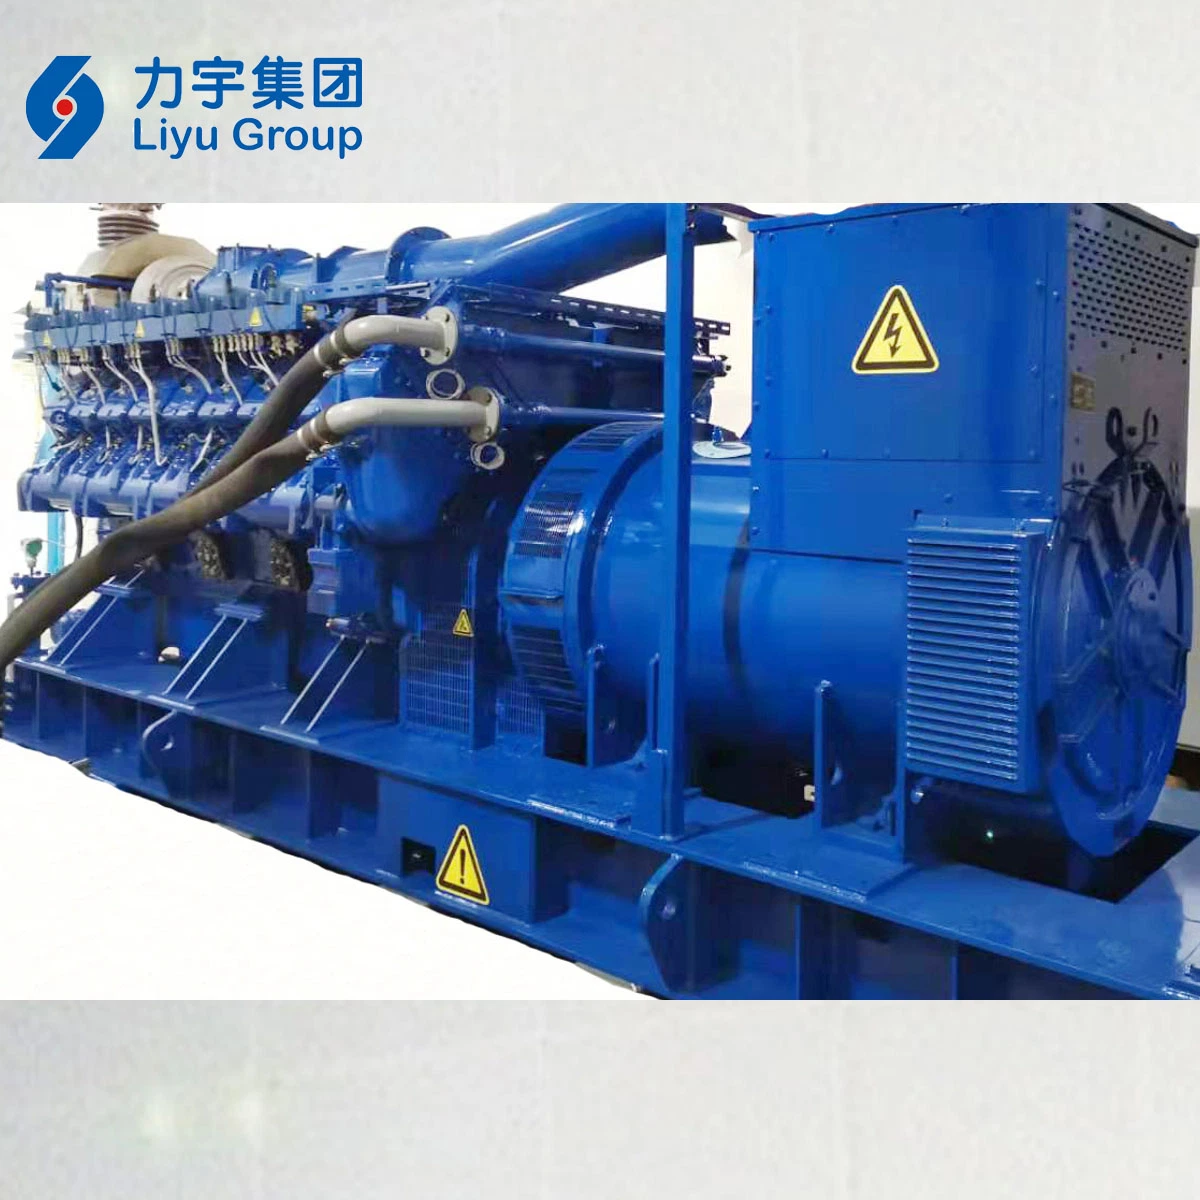 La Chine Liyu 1500KW Haute efficacité électrique et thermique 400V en mer profonde du système britannique de gaz naturel générateurs de puissance